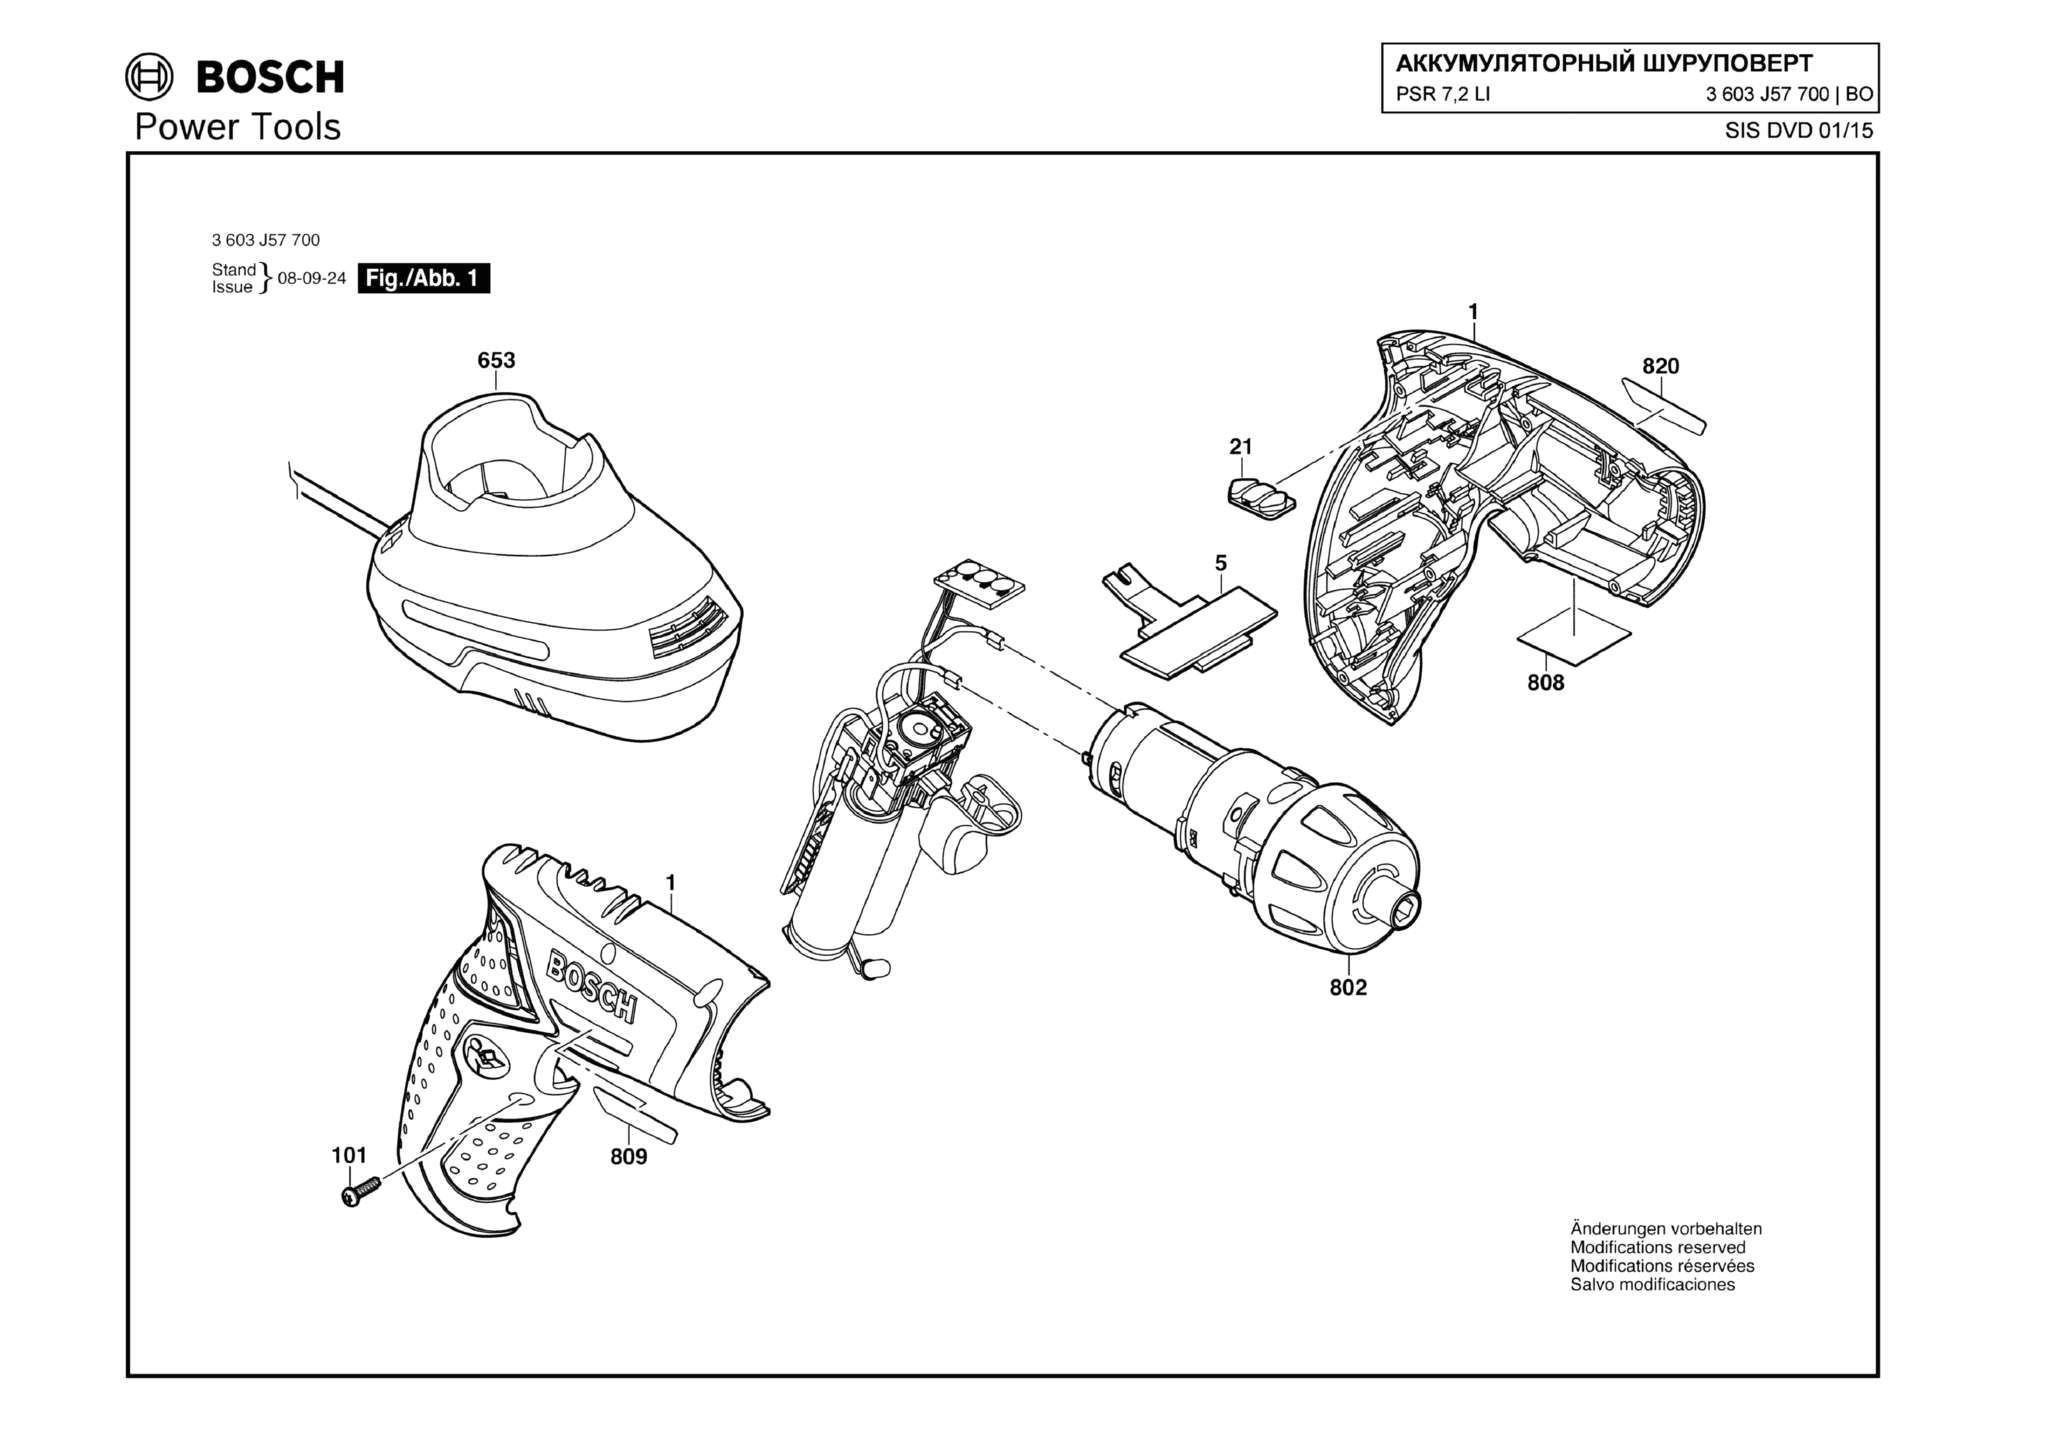 Запчасти, схема и деталировка Bosch PSR 7,2 LI (ТИП 3603J57700)